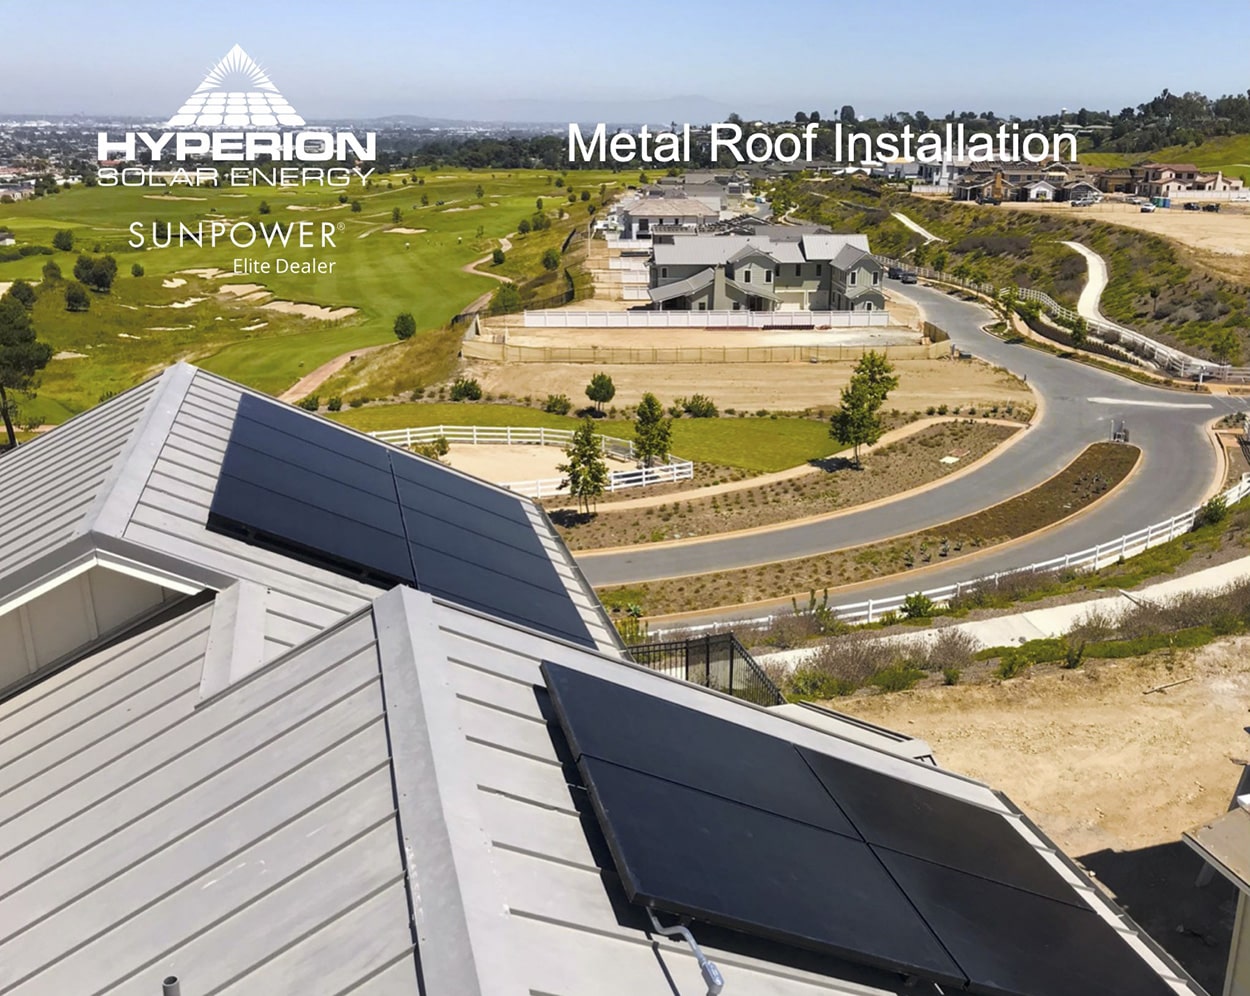 Metal Roof Solar Installation